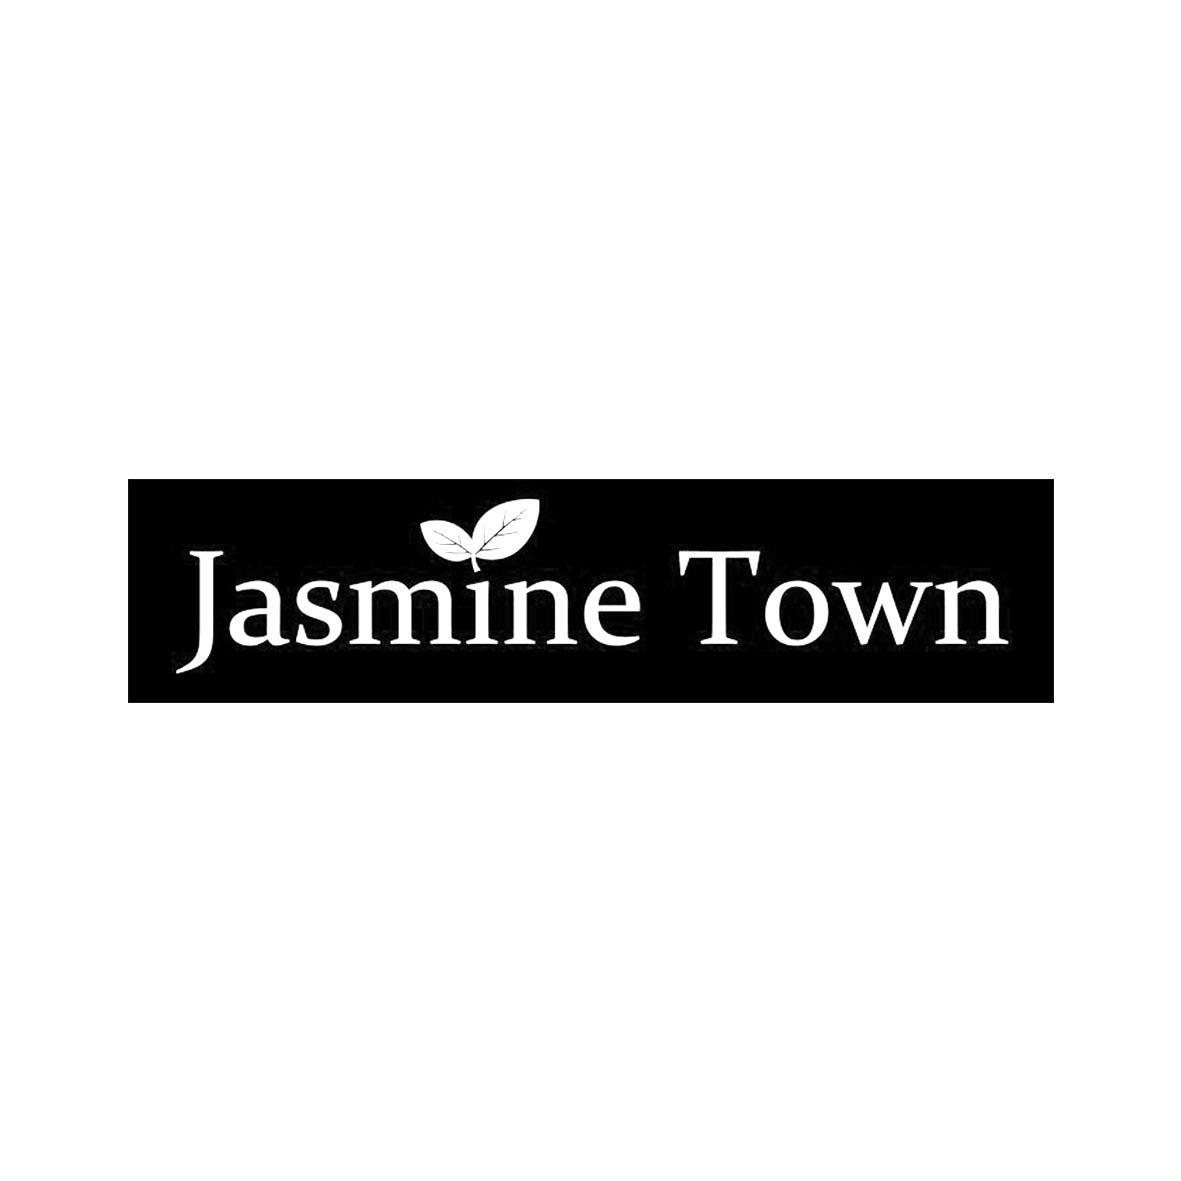 JASMINE TOWN